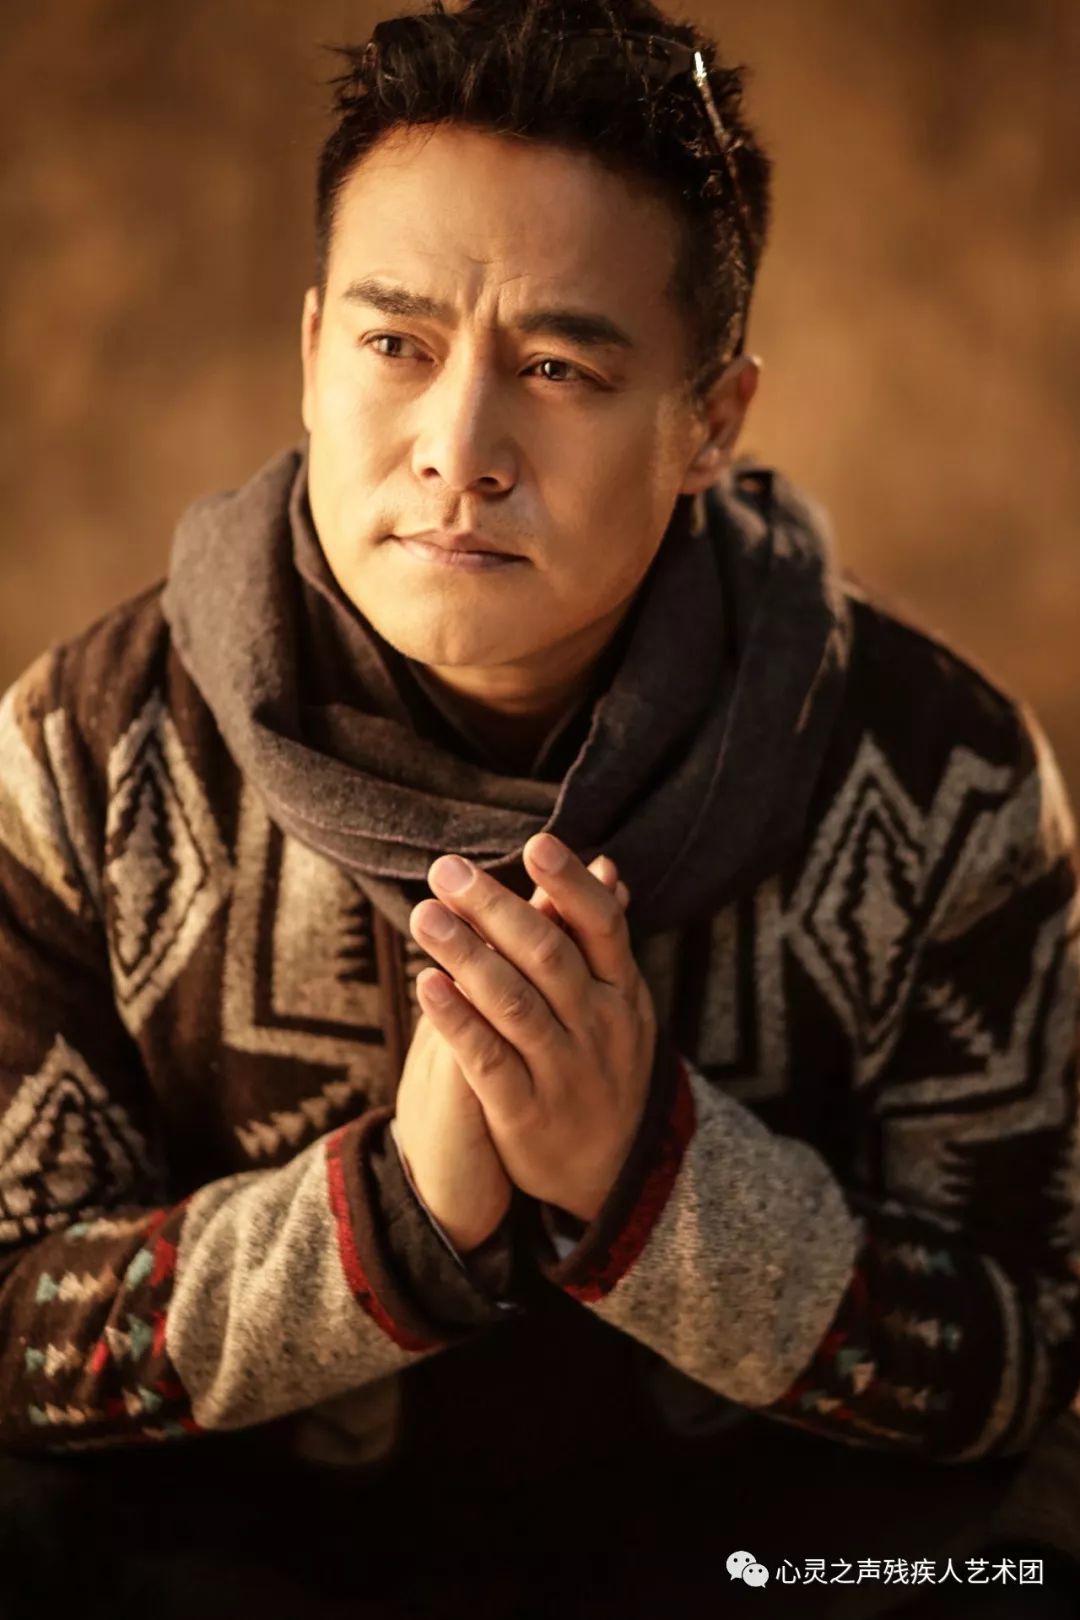 著名影视演员张永刚艺名黑子受聘为北京心灵之声残疾人艺术团和启明